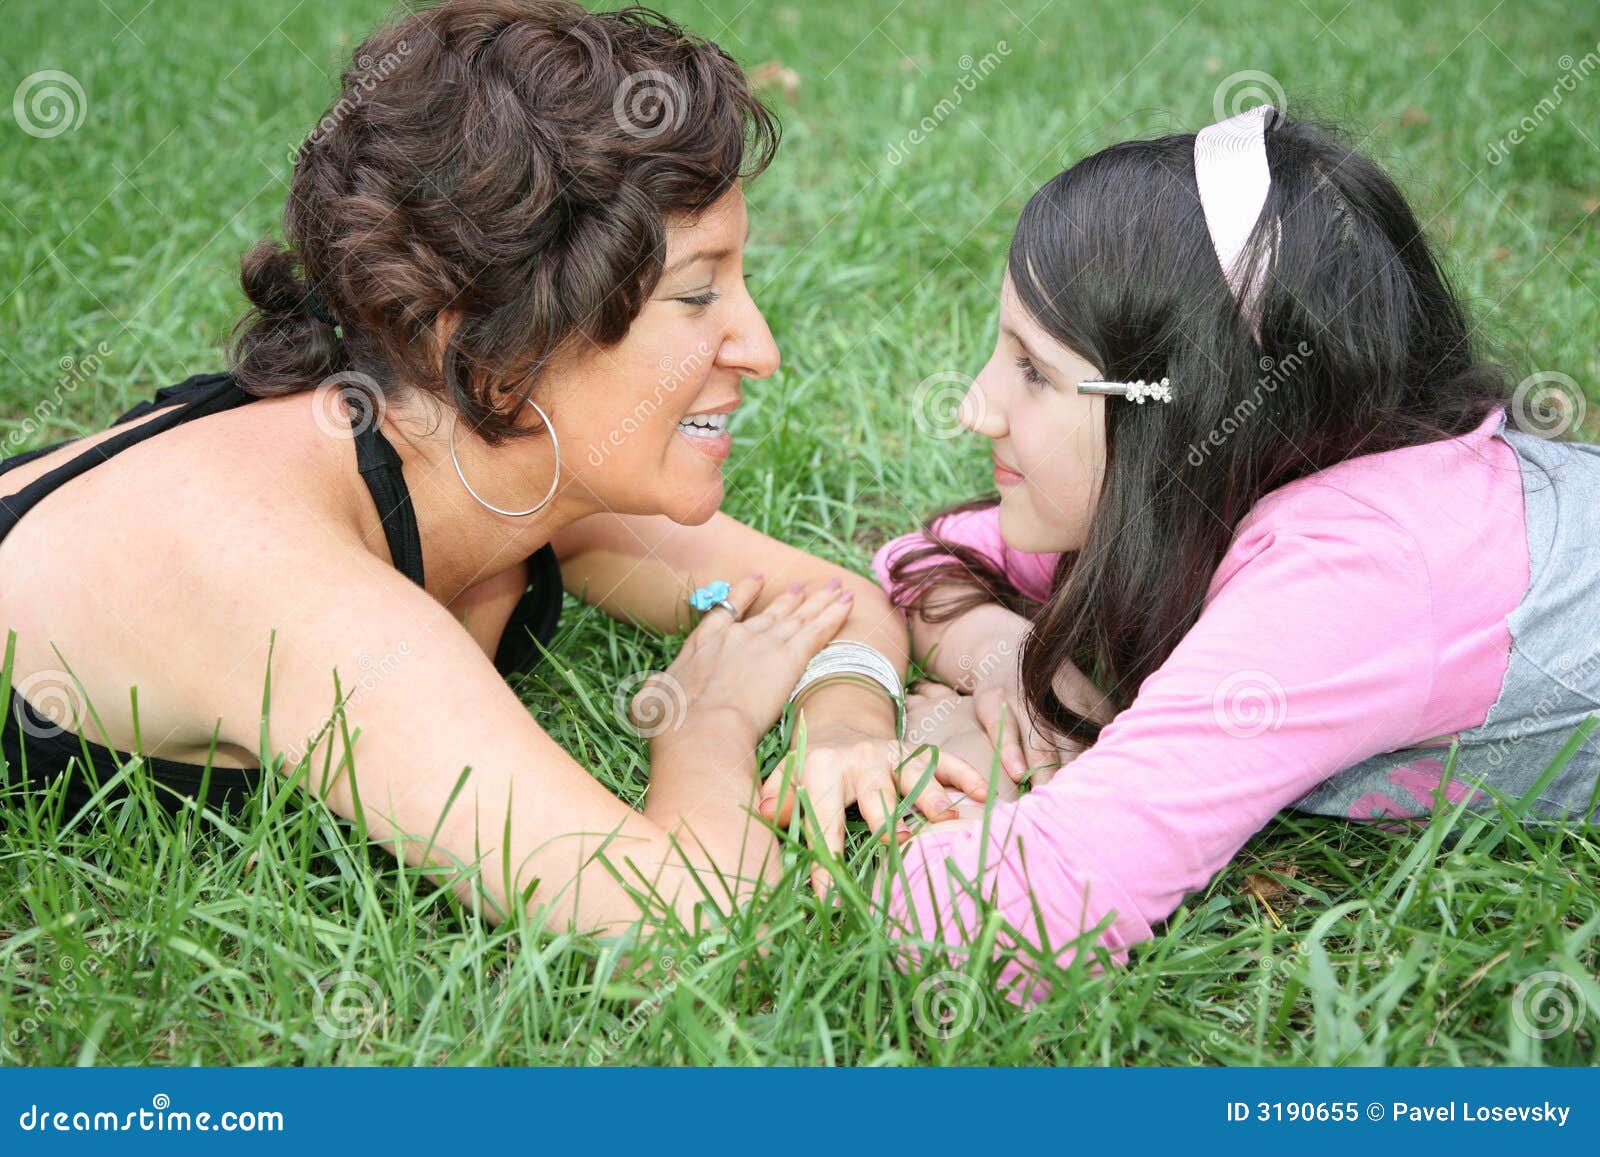 Мама лесбиянка с разговорами. Мать и дочь на траве. Дочка лежит на маме. Мама и дочка лесбиянство. Фотосессия мама и дочь лизбиянка.